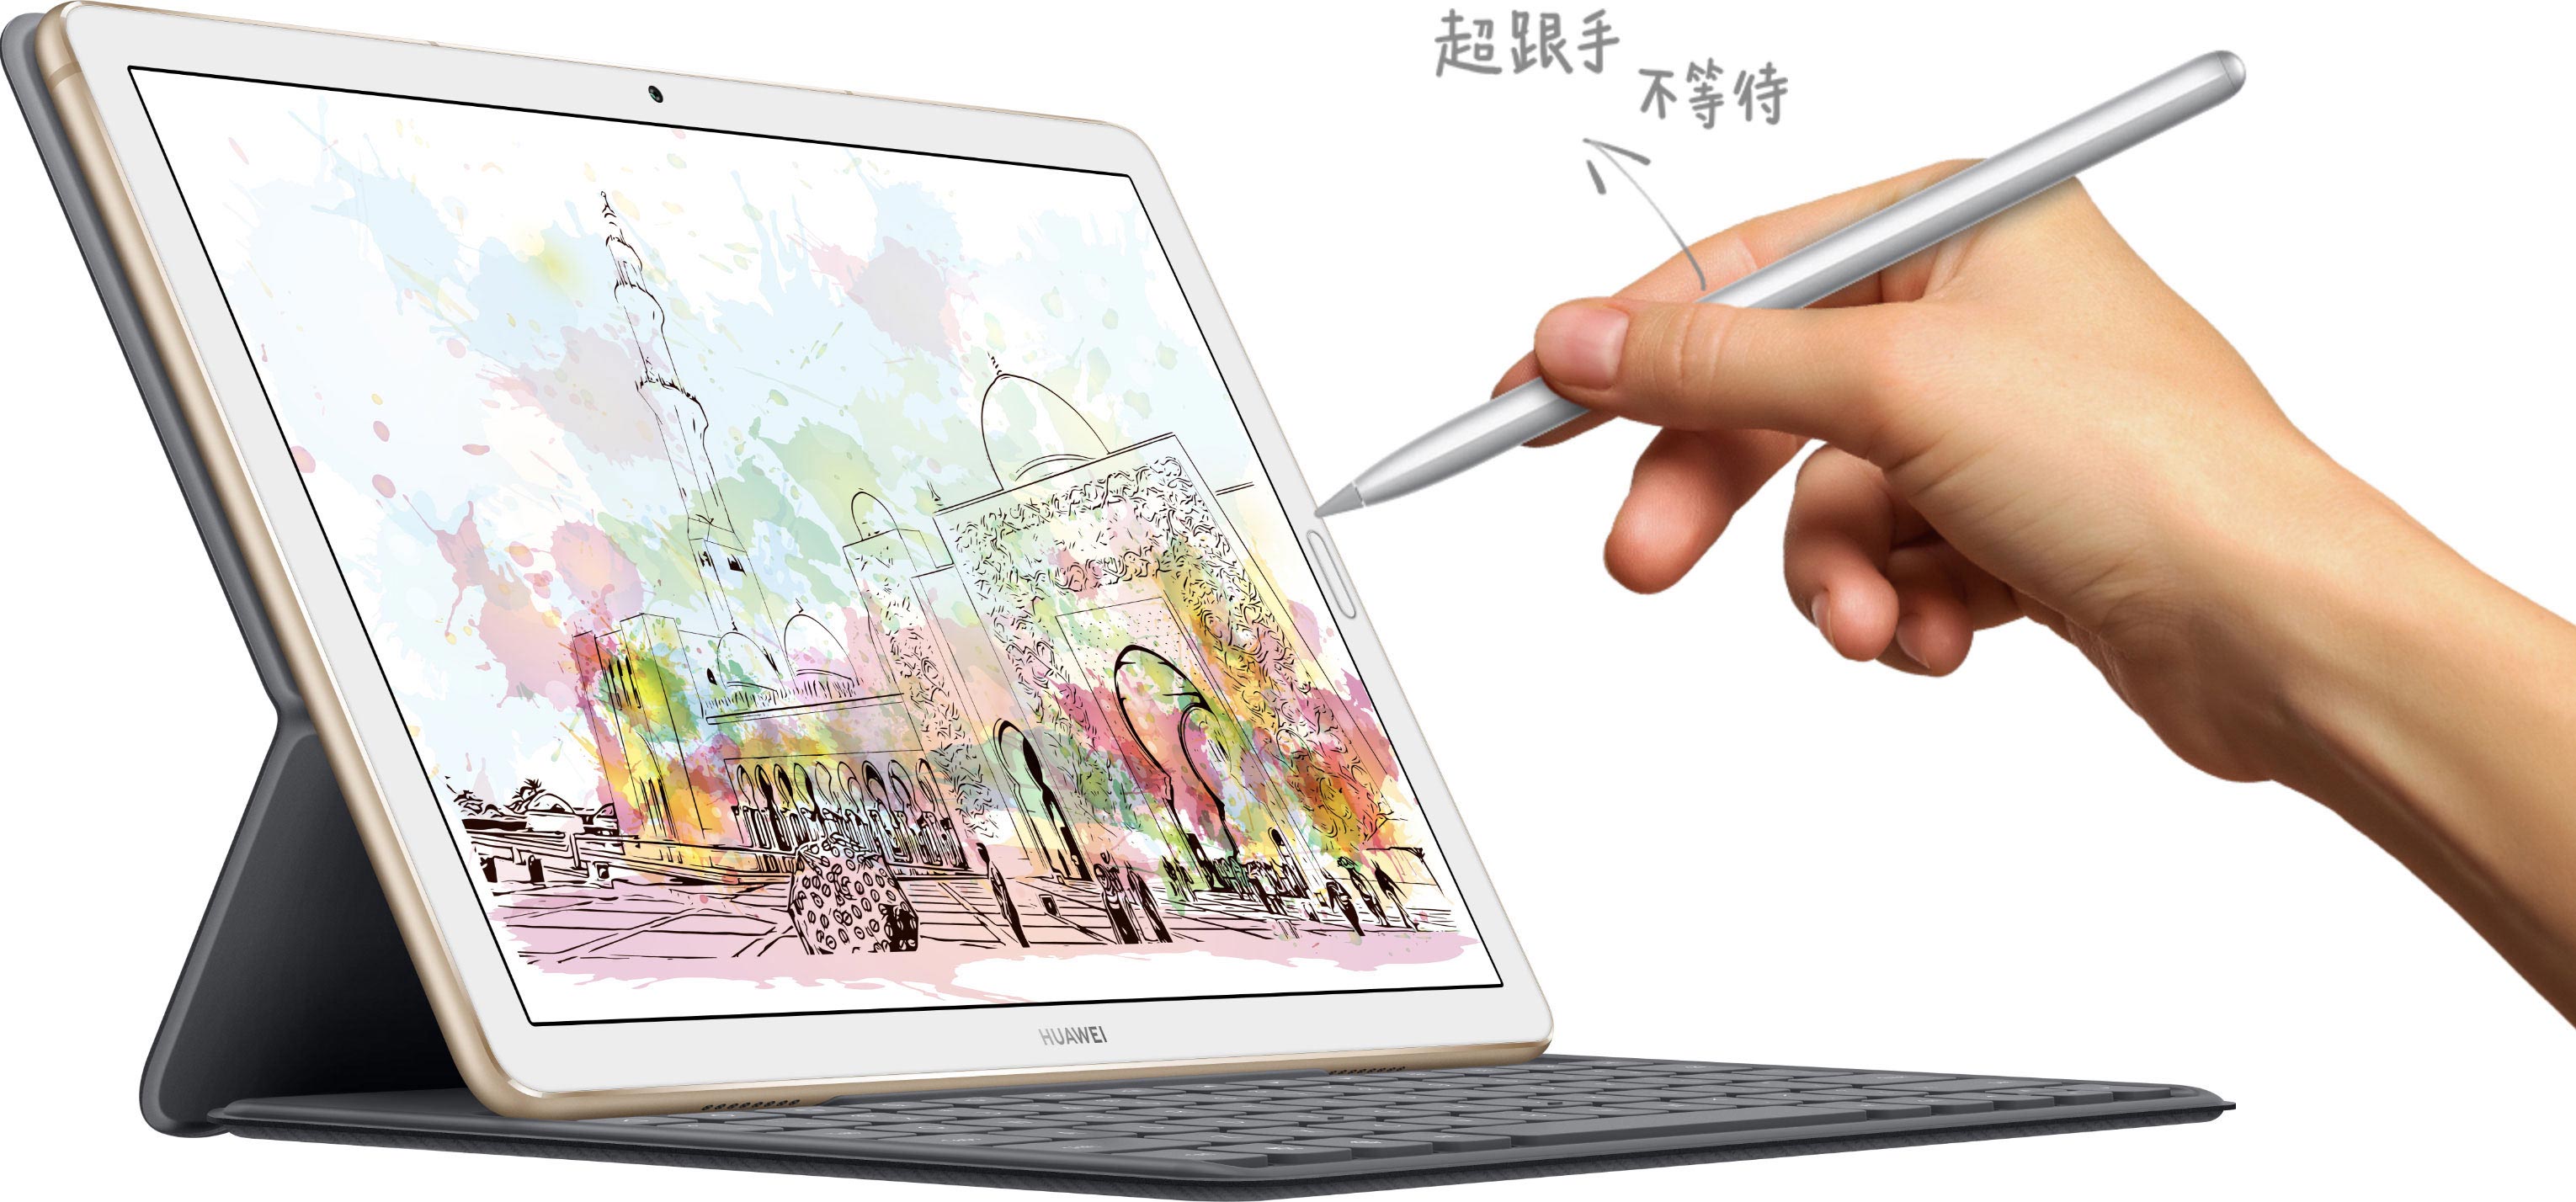 HUAWEI MatePad 10.8支持M-Pencil手写笔与智能磁吸键盘